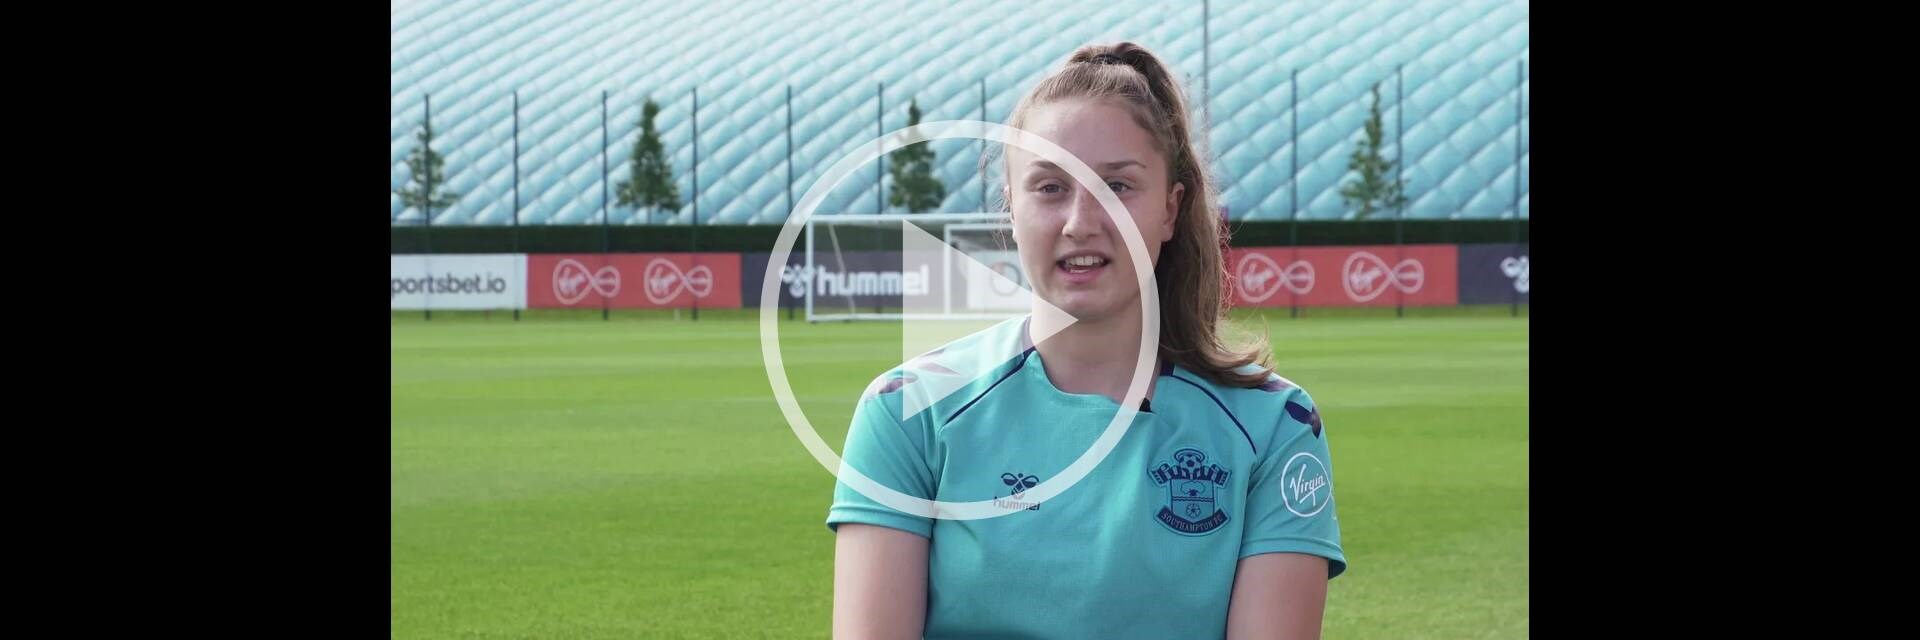 Southampton FC Women: life as an elite athlete video thumbnail